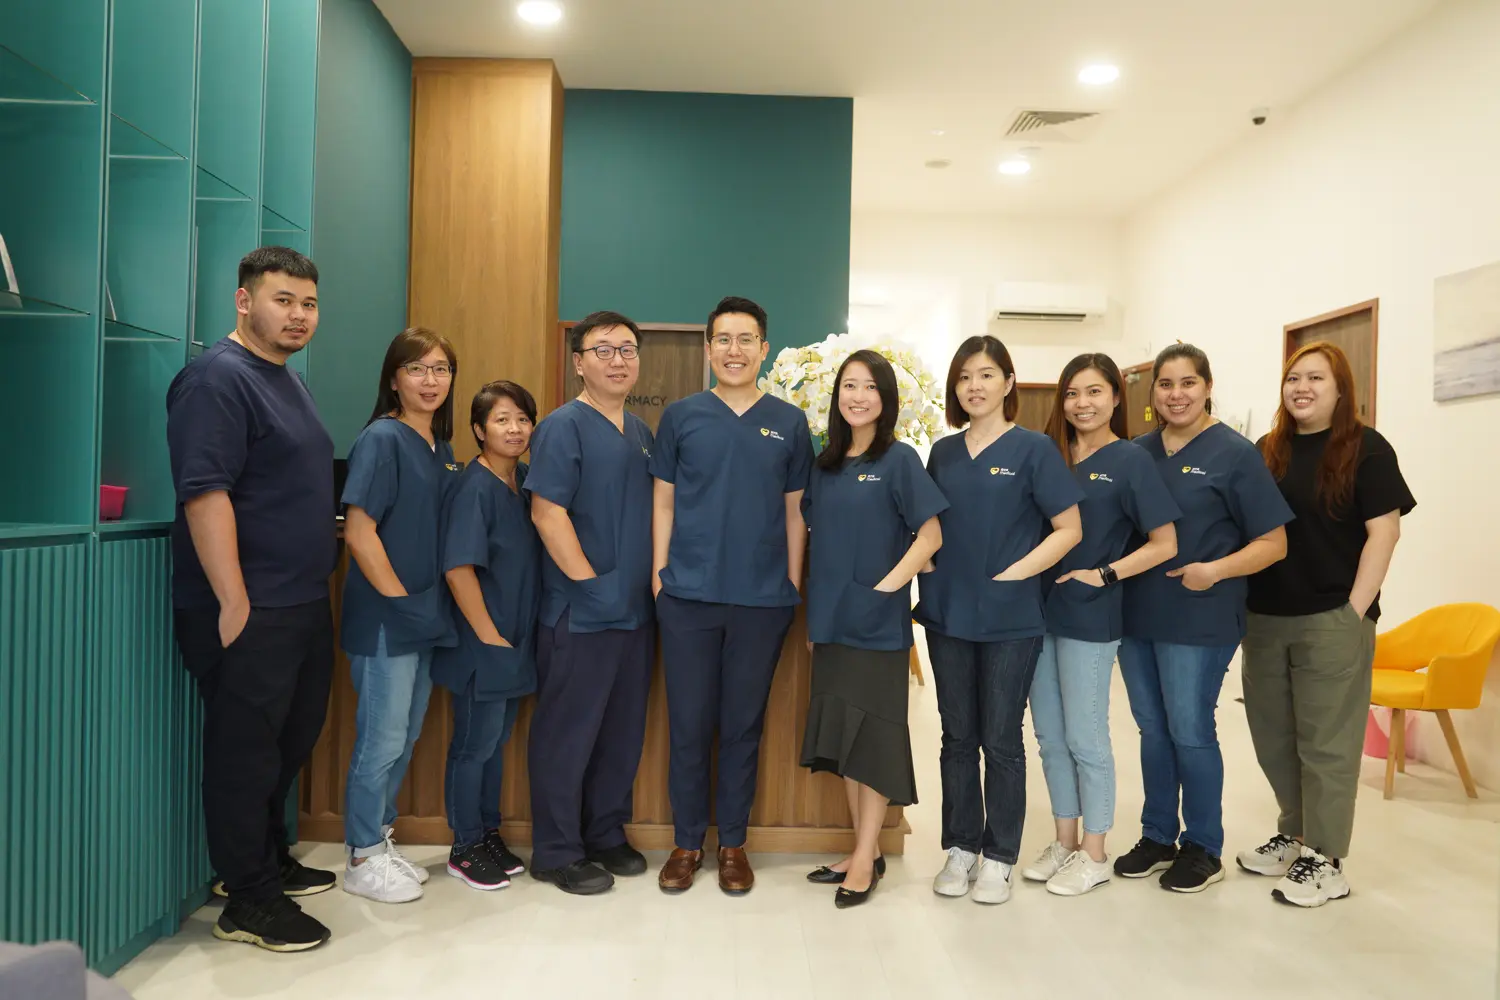 ATA Medical Tanjong Pagar Clinic with Health Screening Nurses and Staff